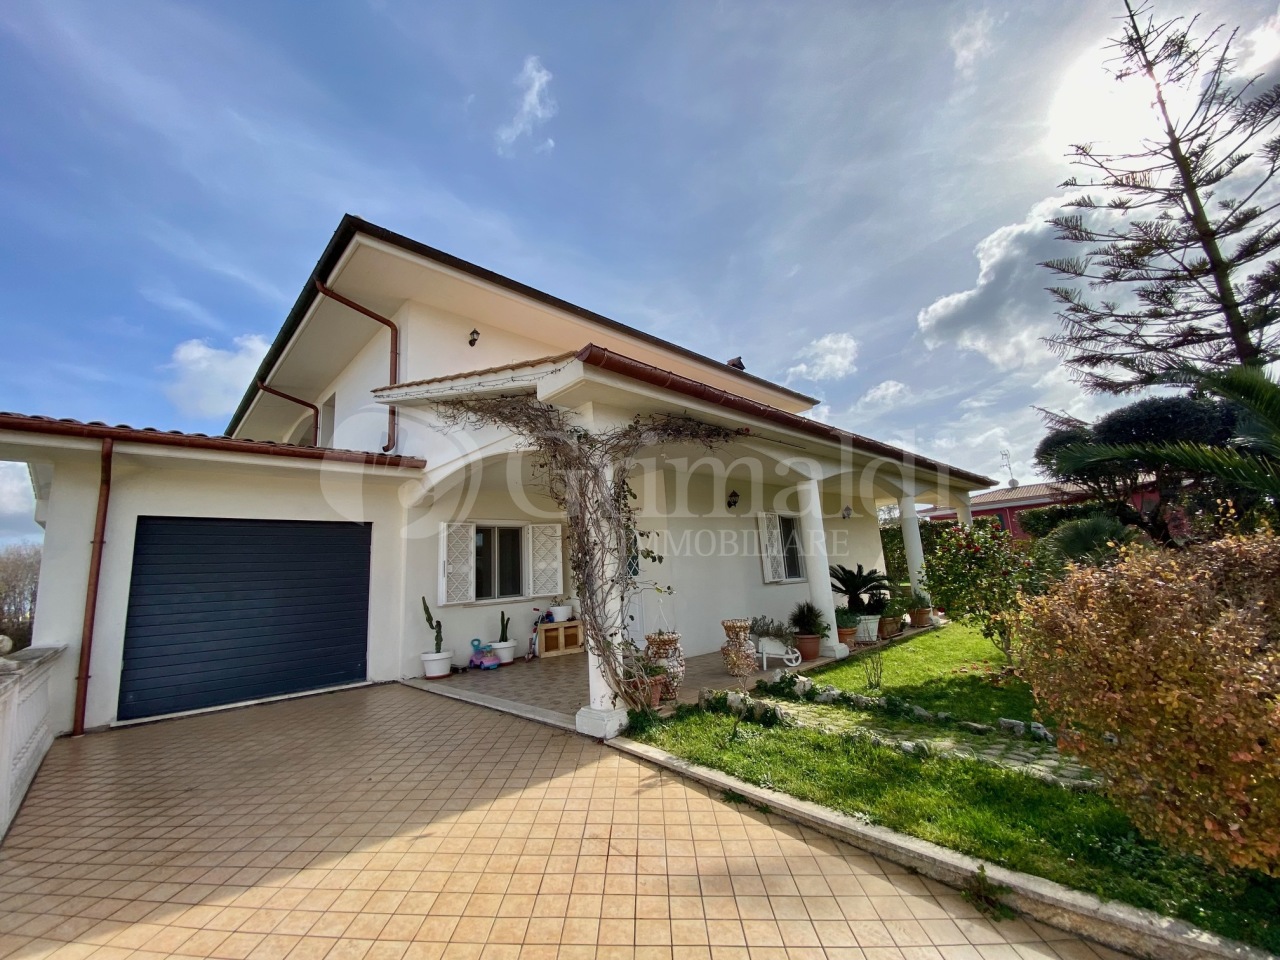 Villa in vendita a Anzio, 9 locali, prezzo € 490.000 | PortaleAgenzieImmobiliari.it